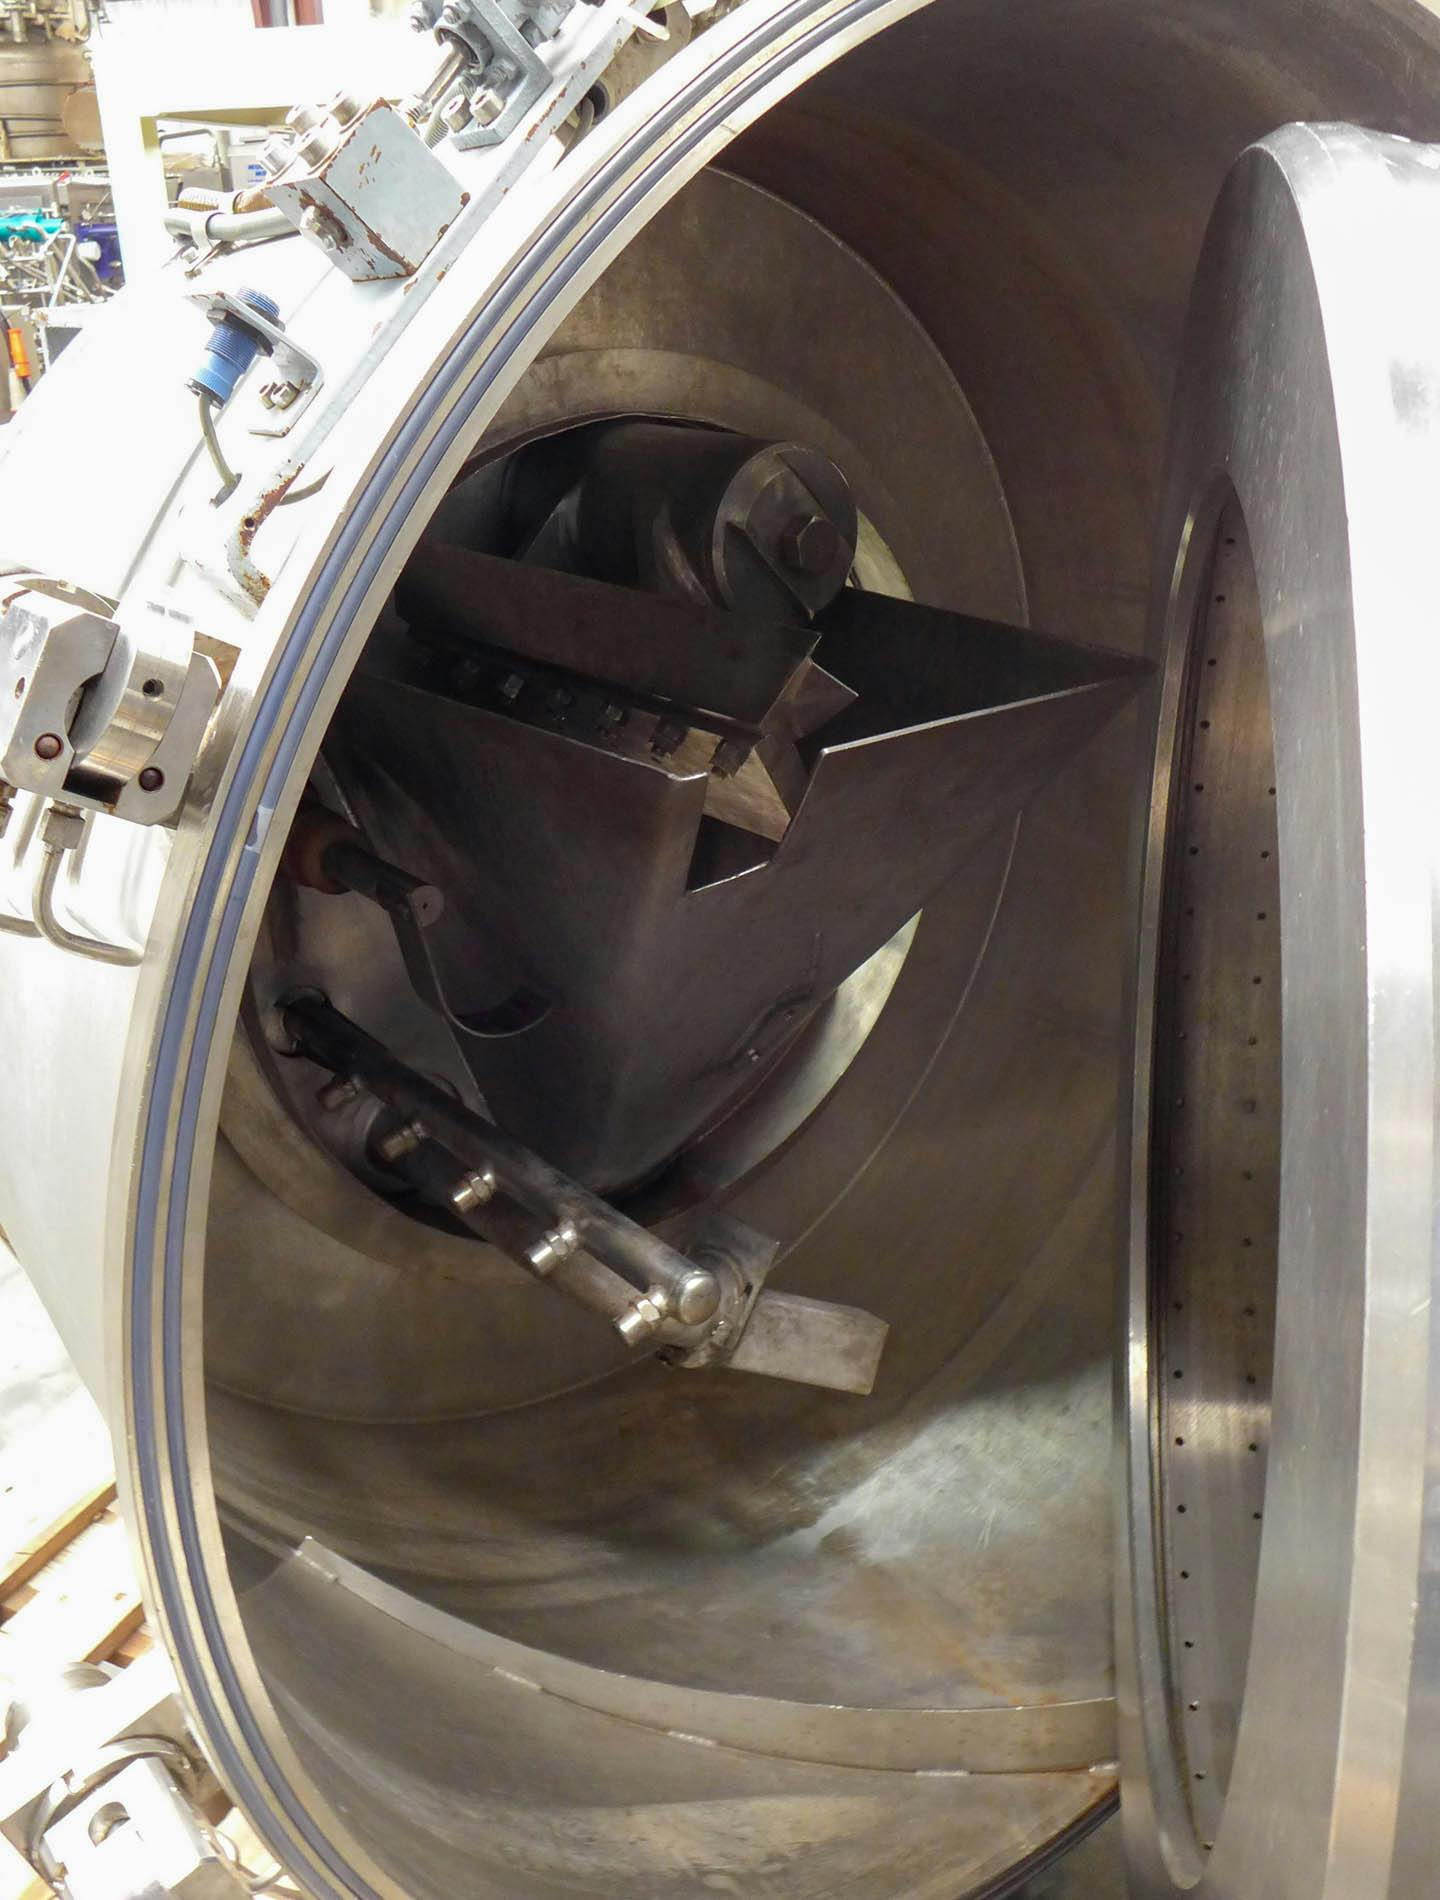 Robatel horizontal peeler centrifuge - Centrífuga de descascar - image 5